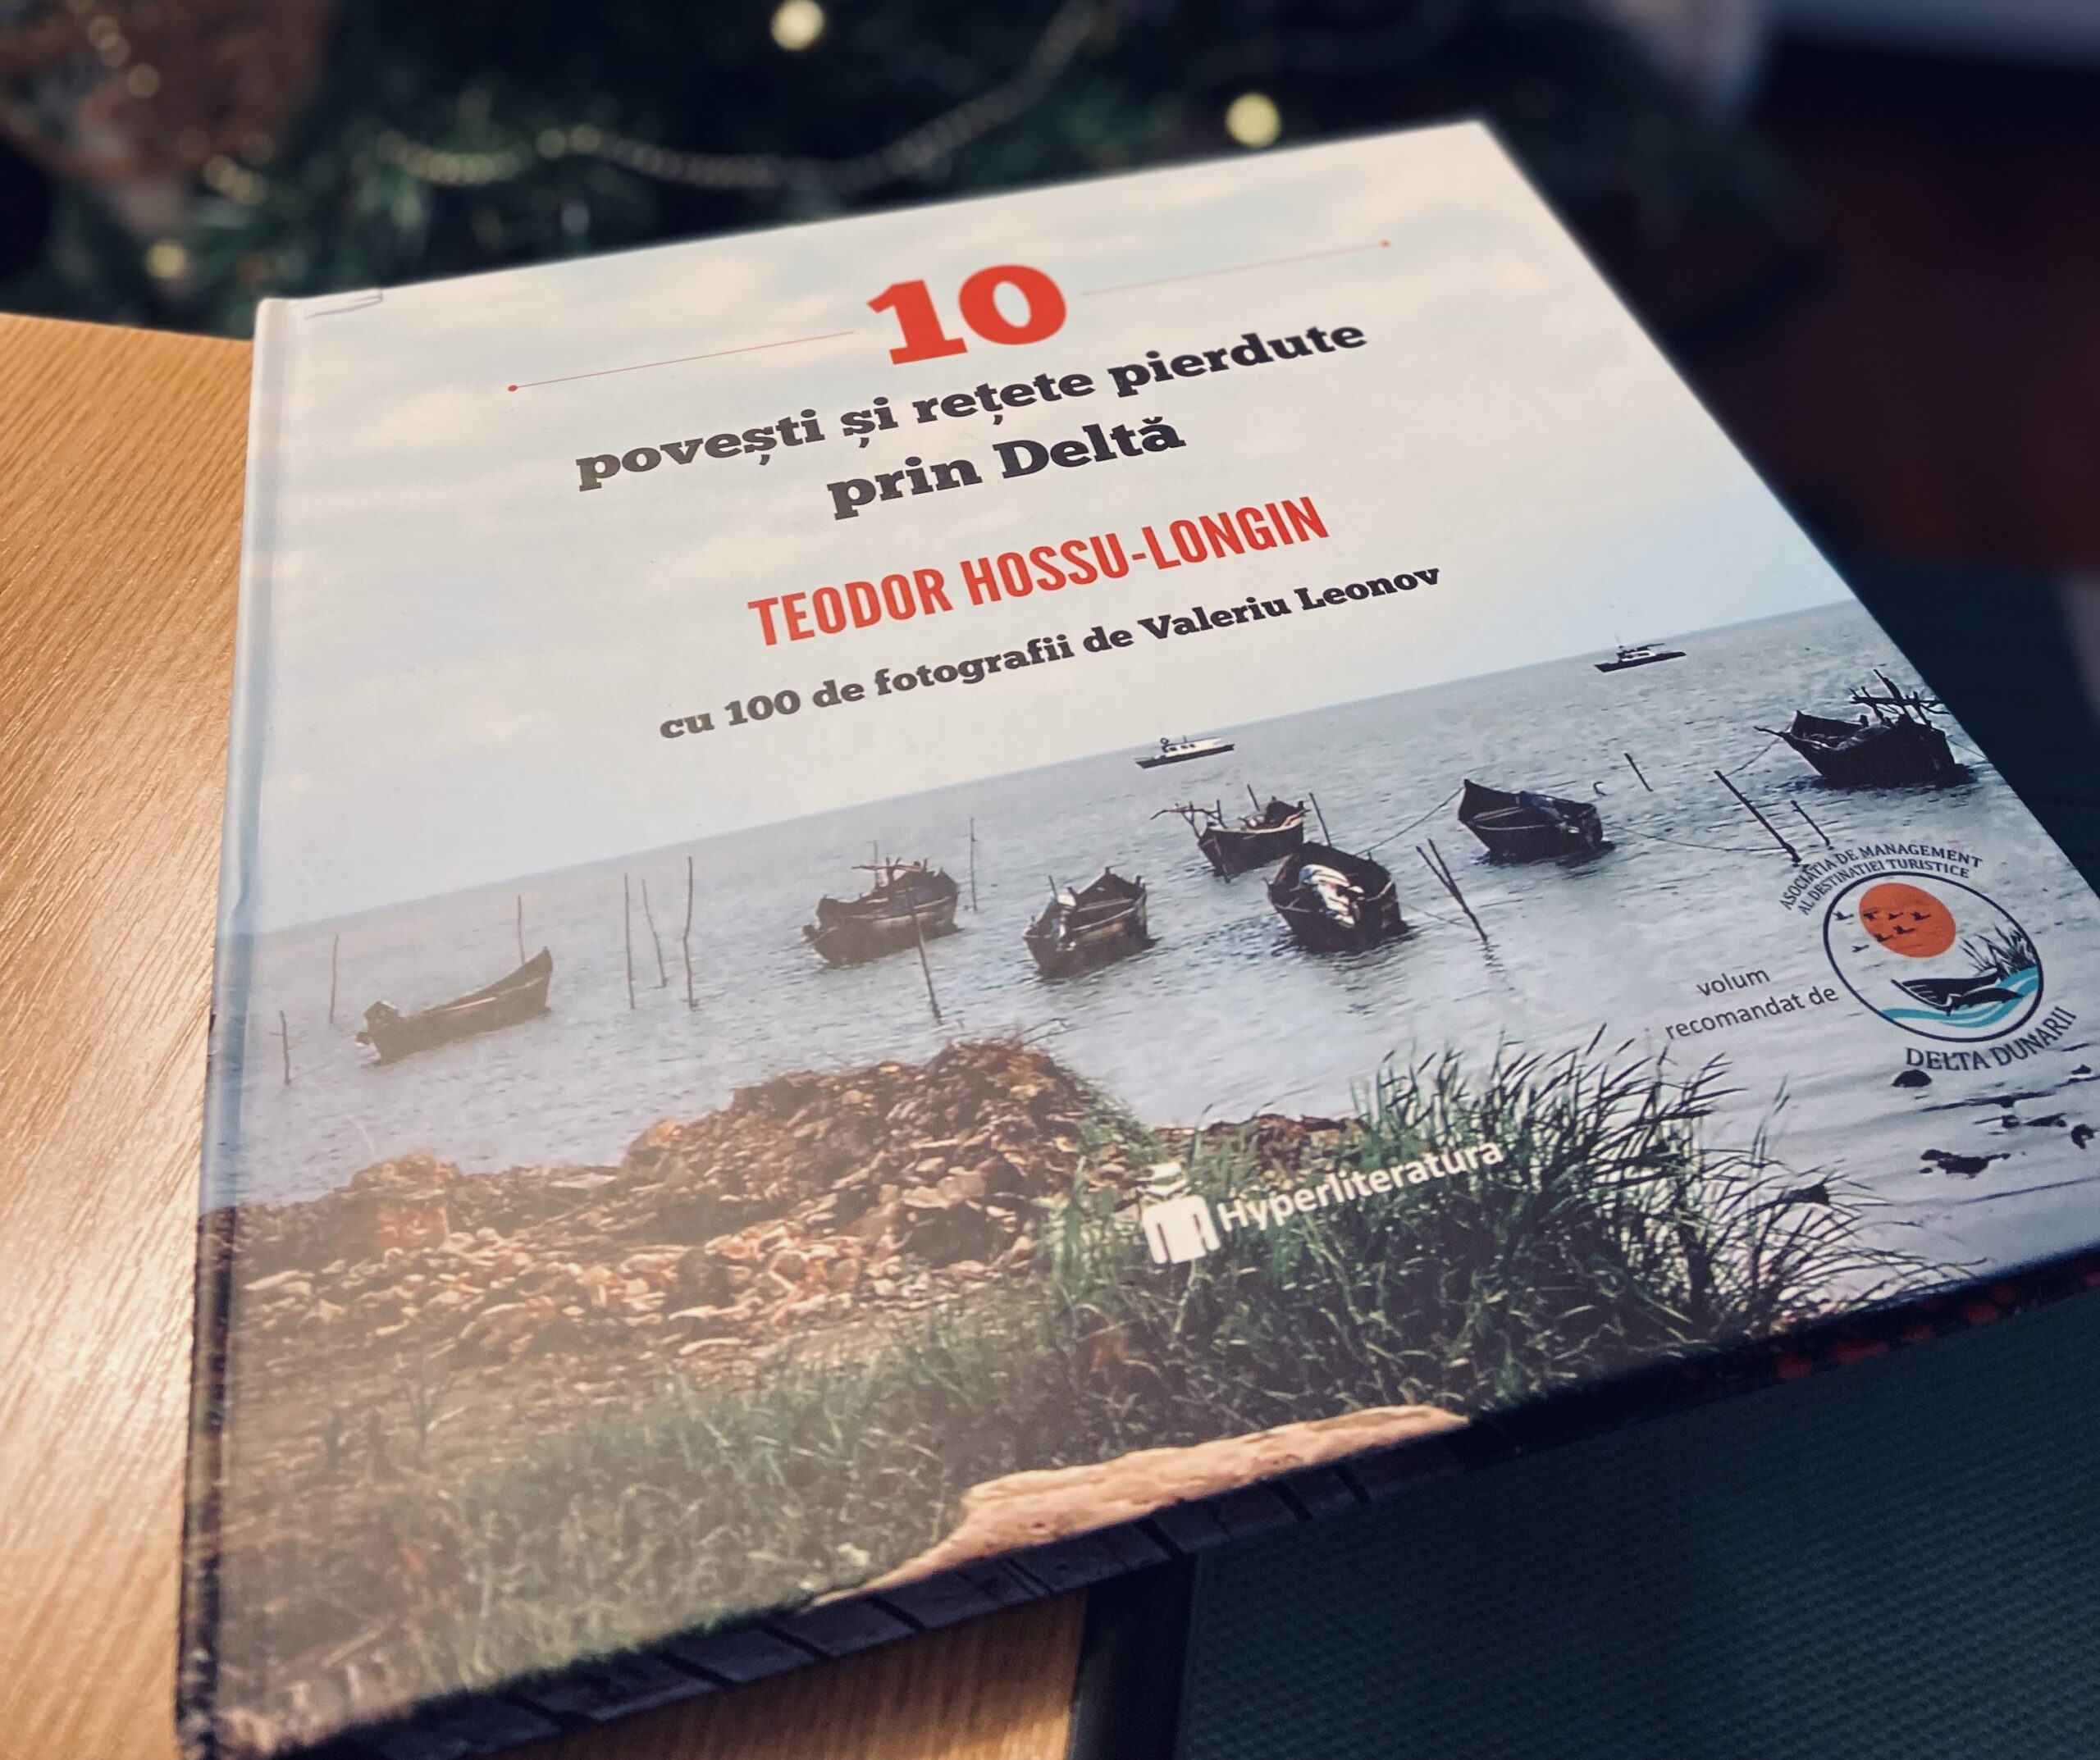 10 povești și rețete pierdute prin Deltă – Teodor Hossu-Longin